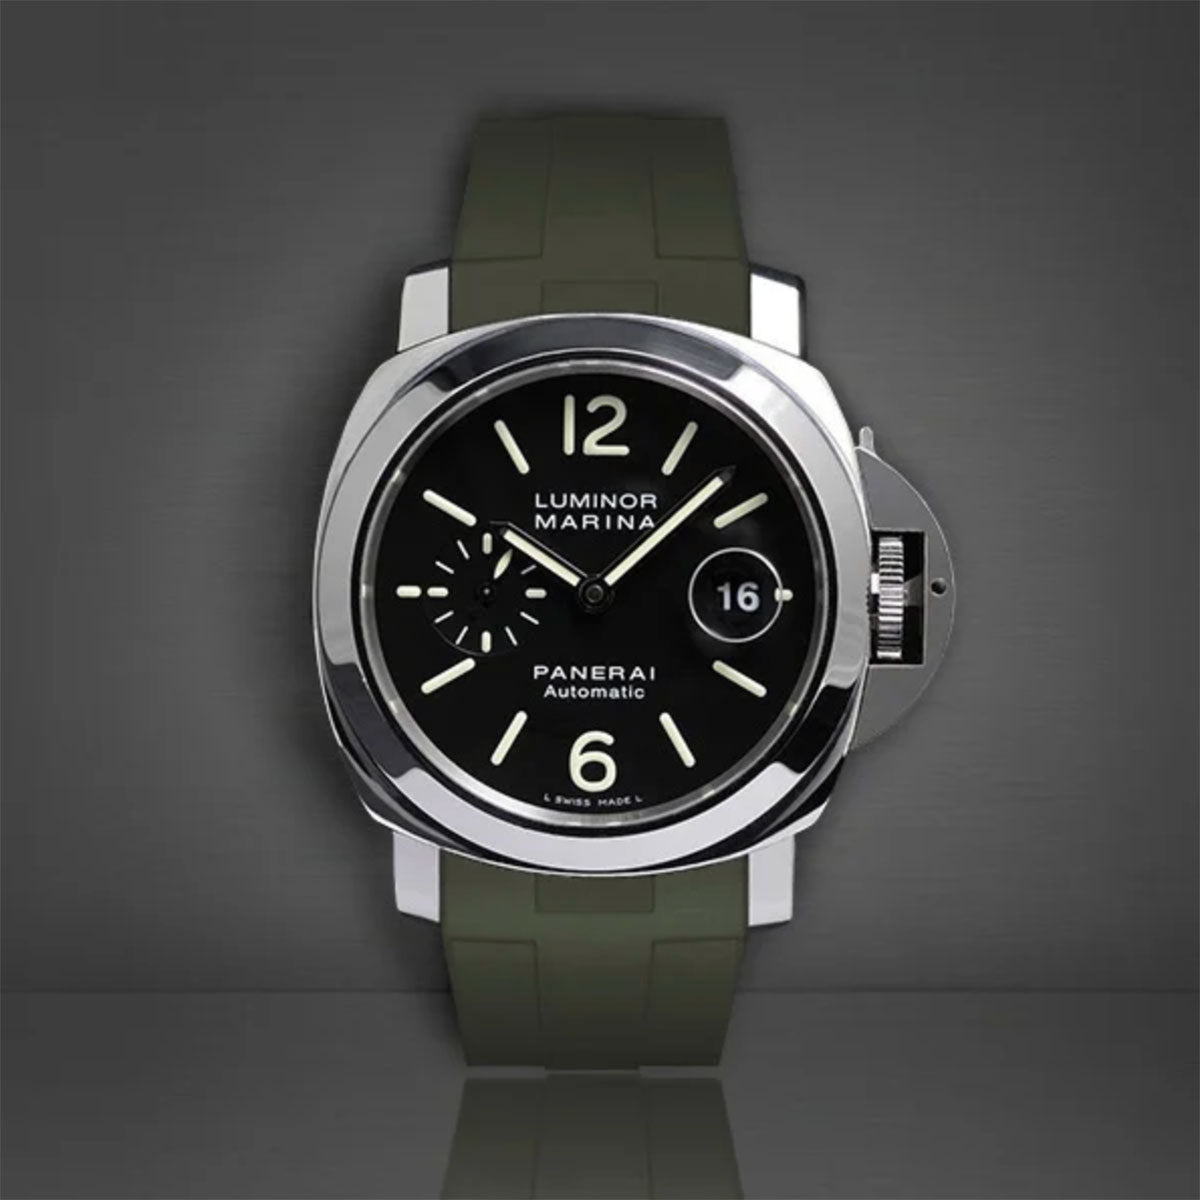 Panerai - Rubber B - Bracelet caoutchouc pour Luminor et Luminor Marina 44mm - watch band leather strap - ABP Concept -